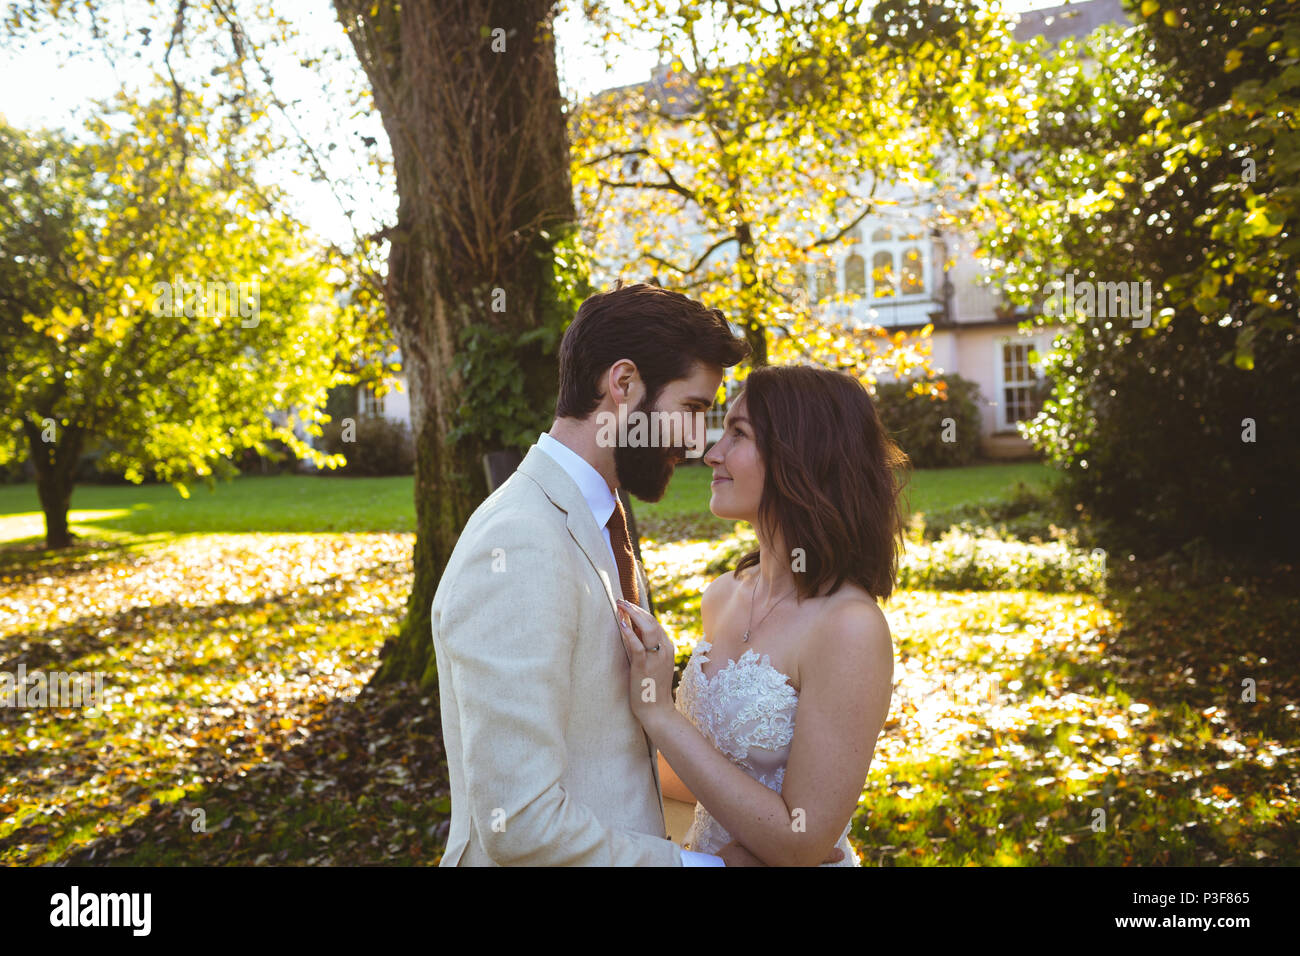 La novia y el novio mirándose a los ojos en el jardín Foto de stock